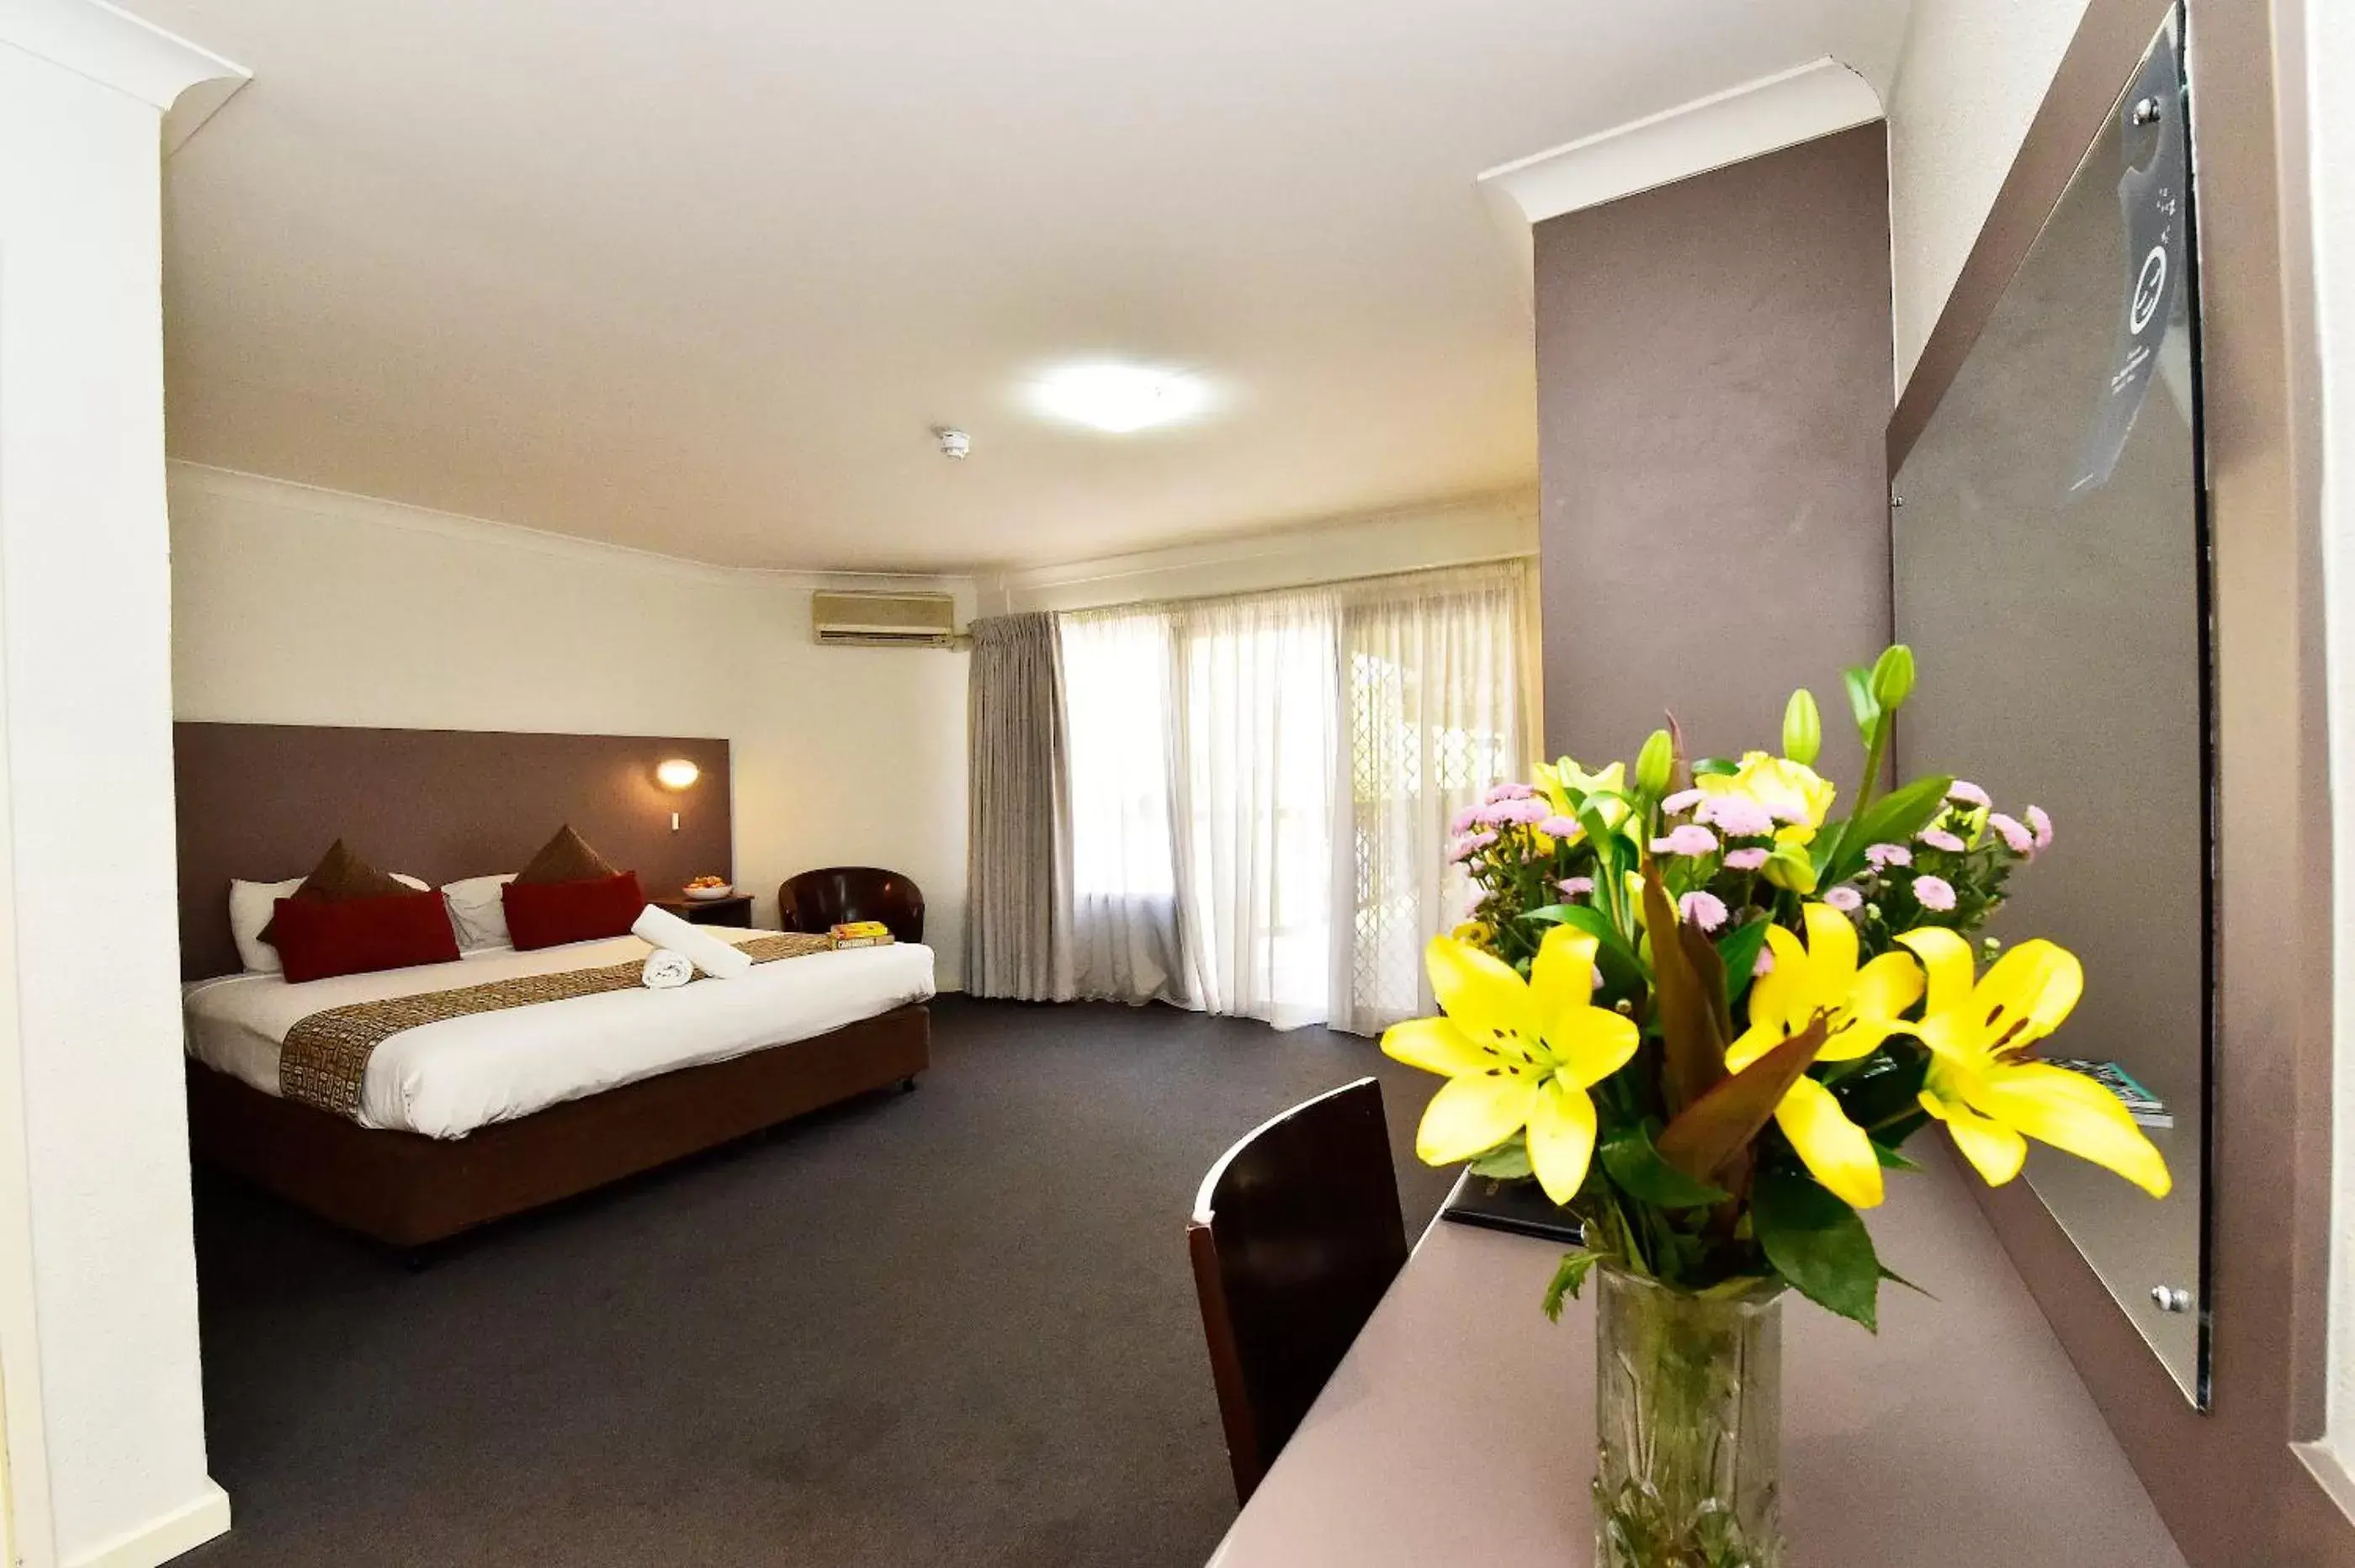 Bedroom, Room Photo in Diplomat Hotel Alice Springs